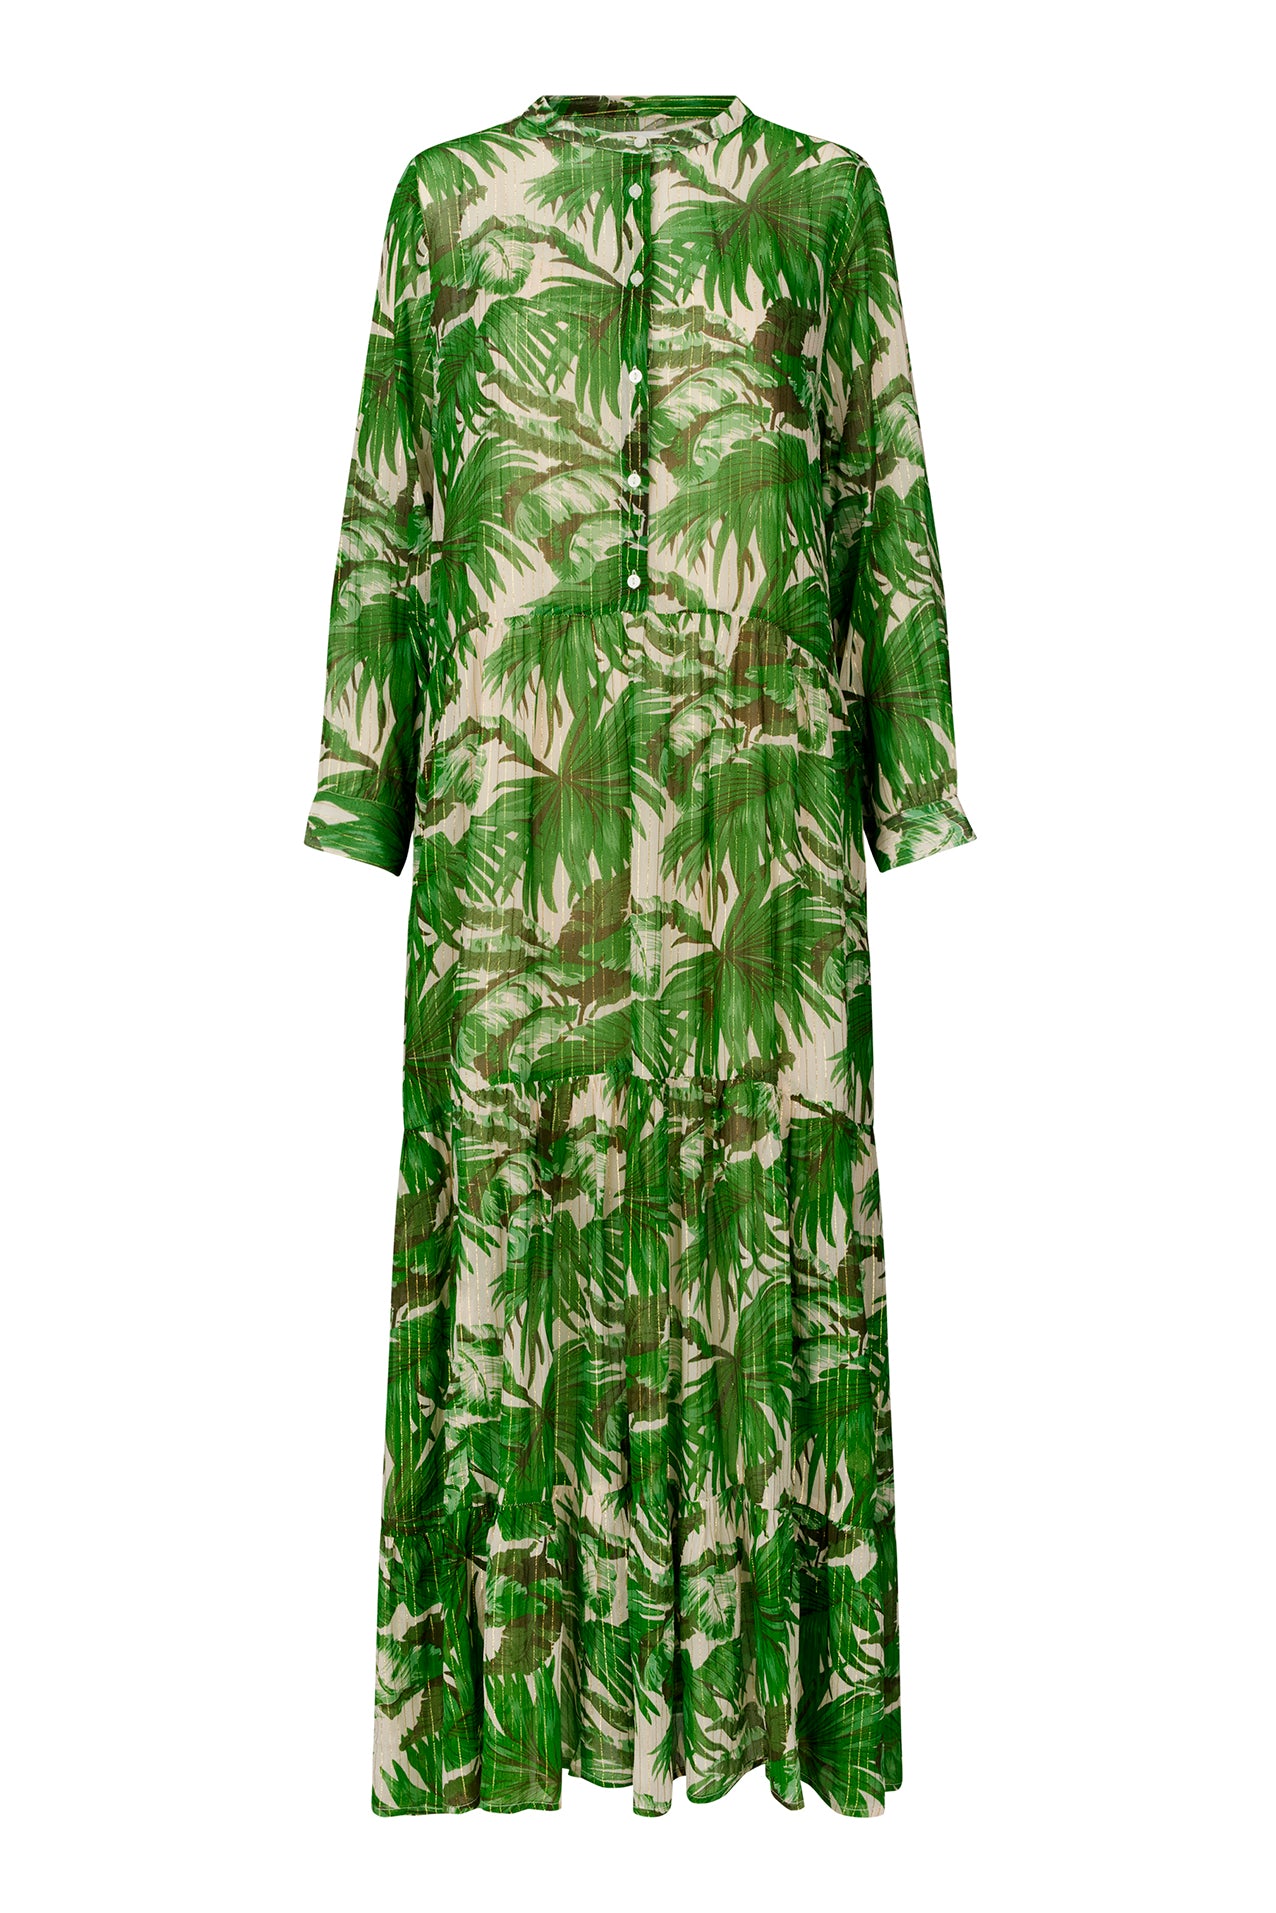 Lollys Laundry NeeLL Maxi Dress LS Dress 40 Green